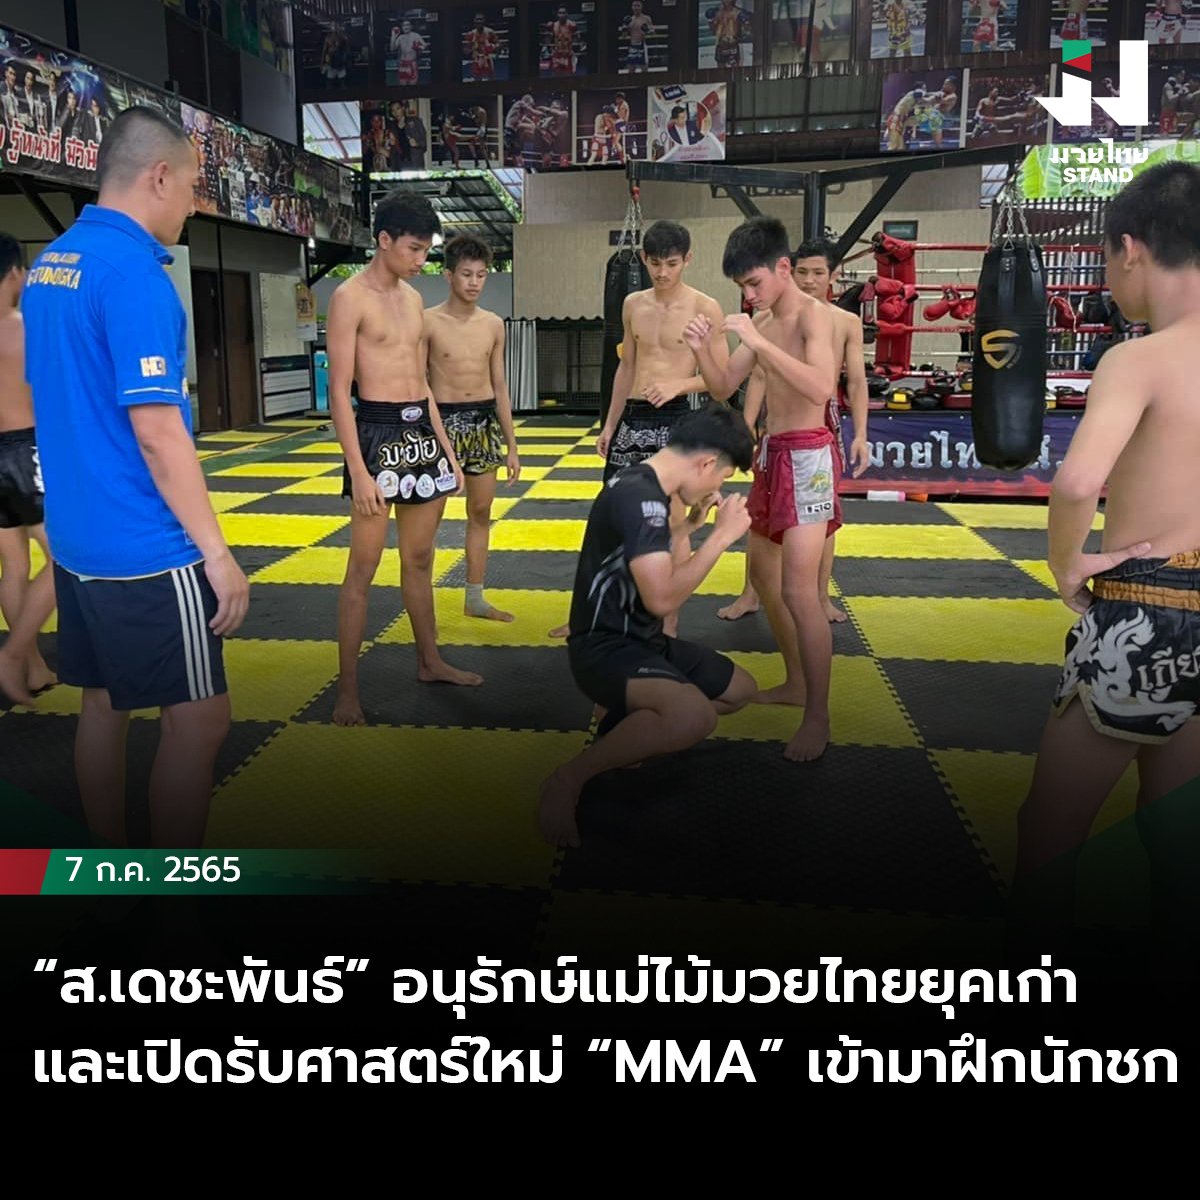 “ส.เดชะพันธ์” อนุรักษ์แม่ไม้มวยไทยยุคเก่าและเปิดรับศาสตร์ใหม่ “MMA” เข้ามาฝึกนักชก